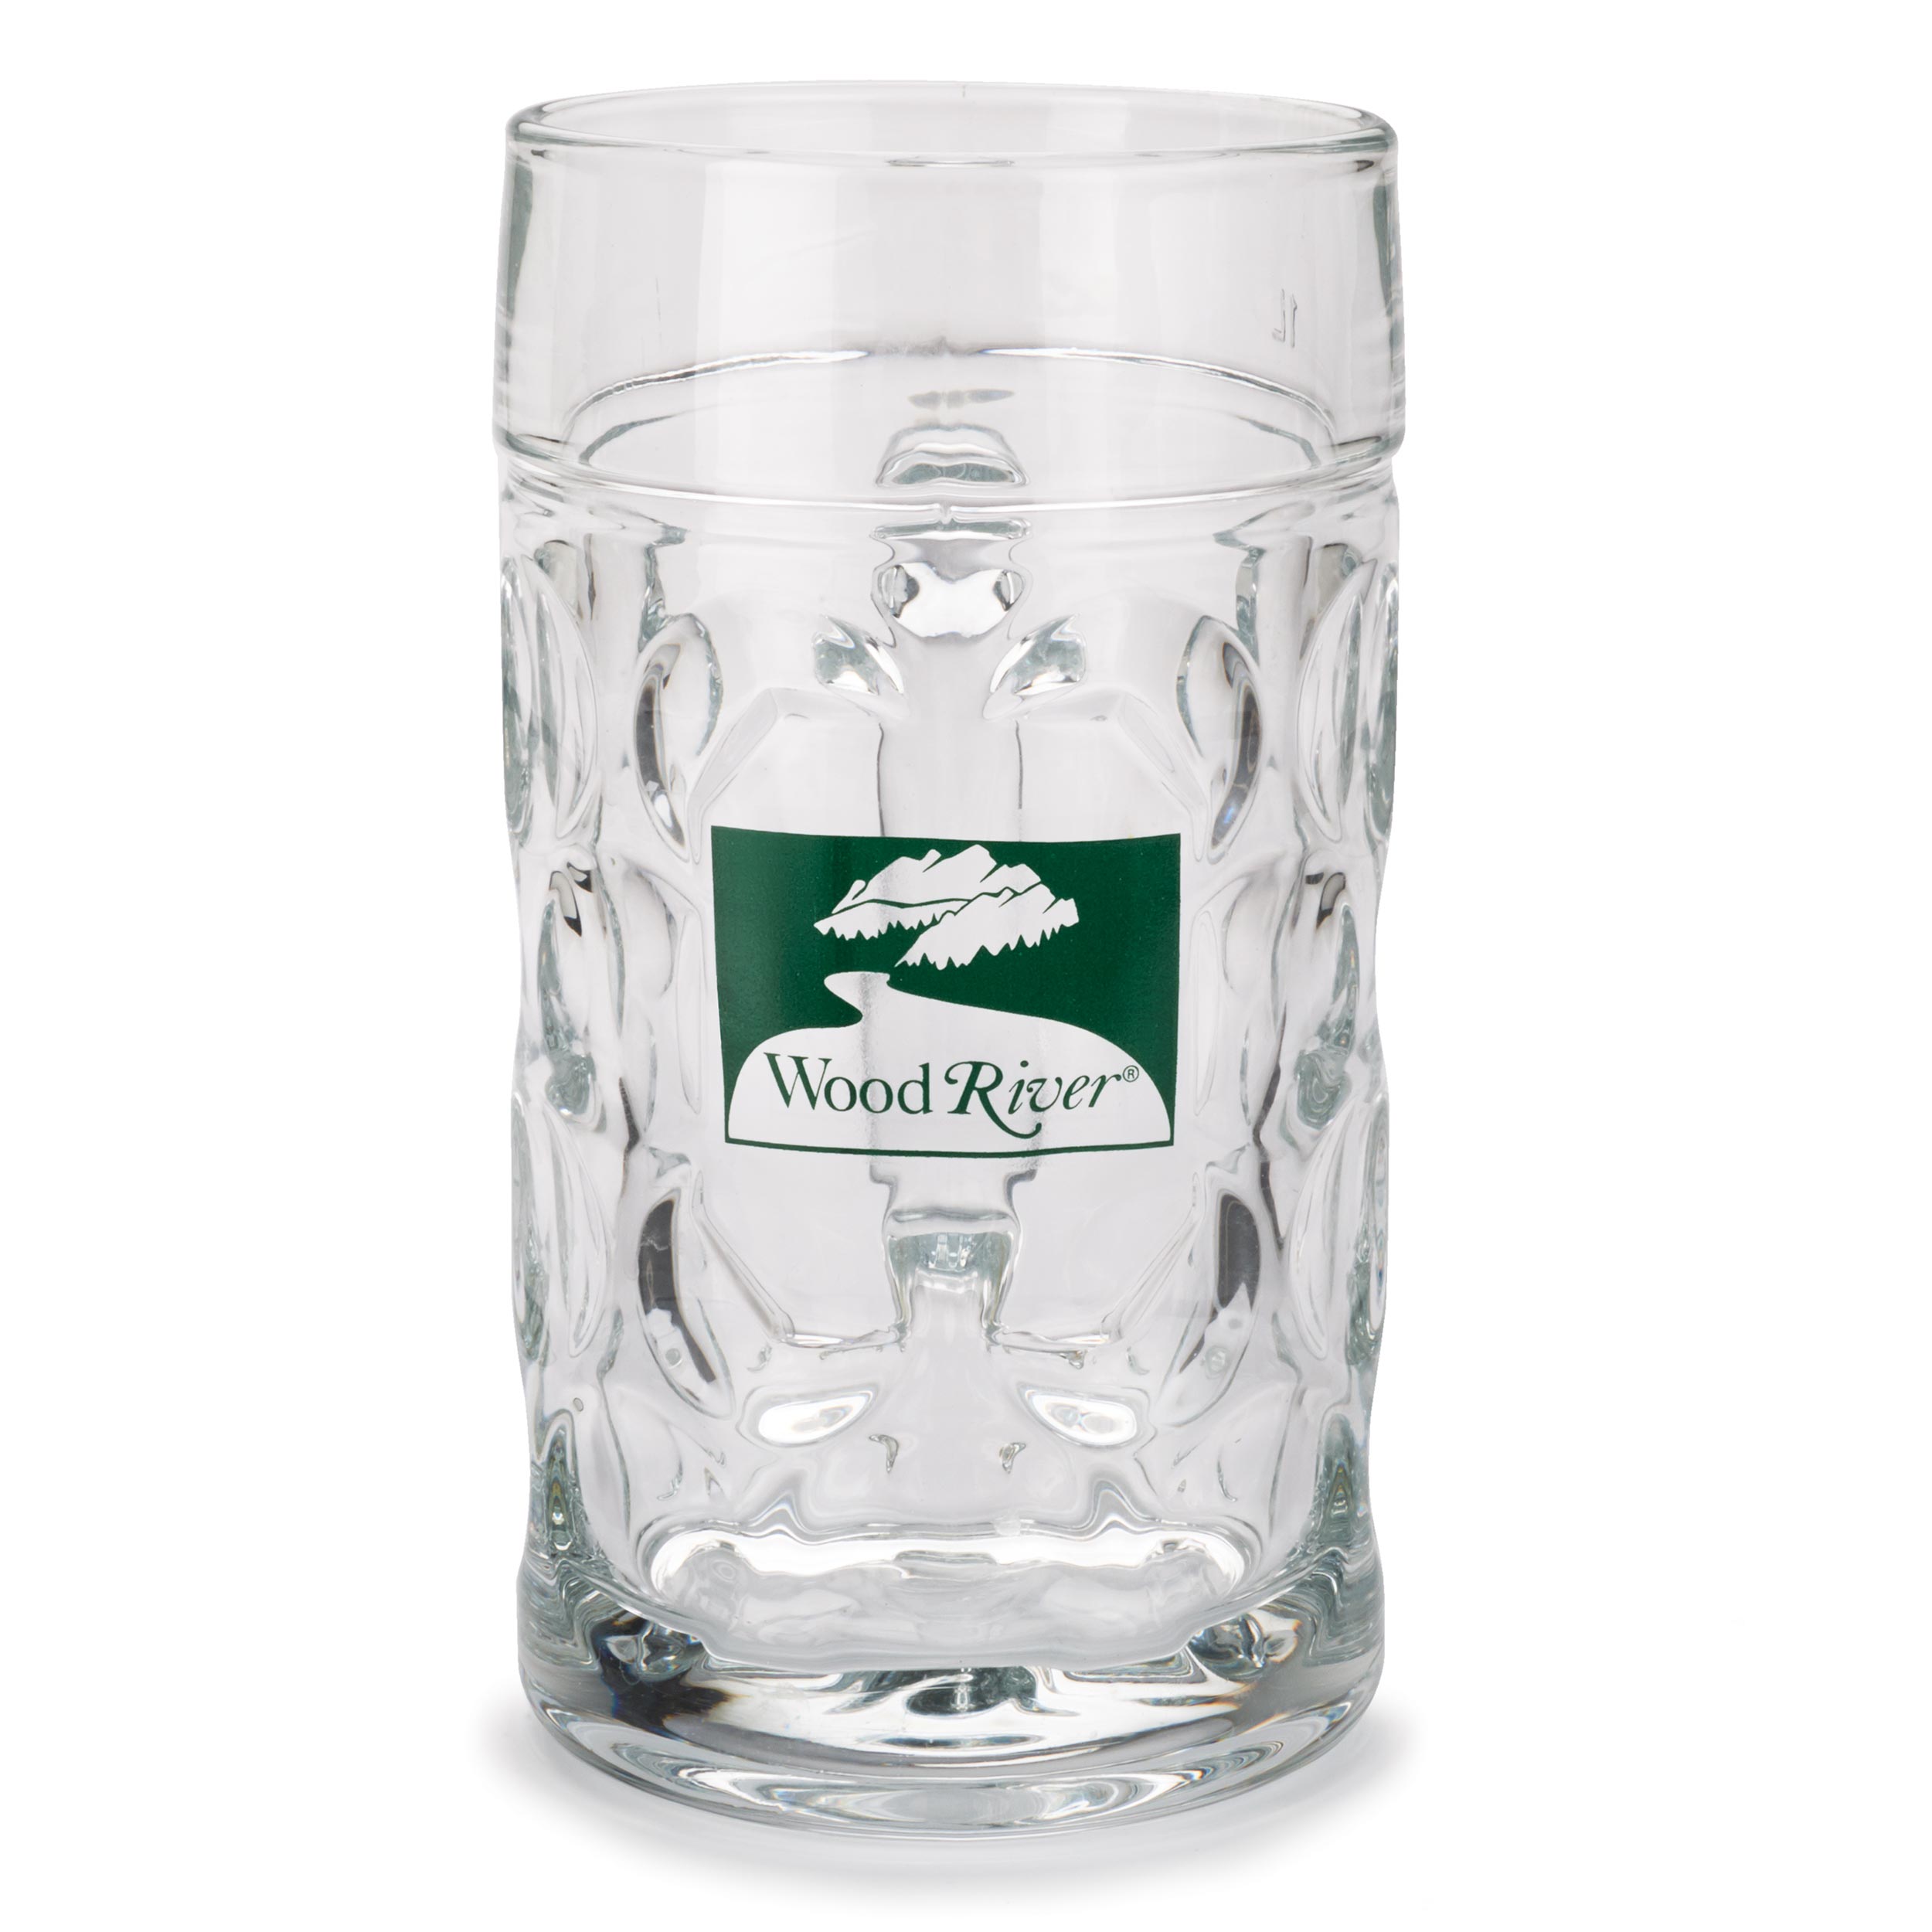 Woodriver 1-liter Glass Beer Mug